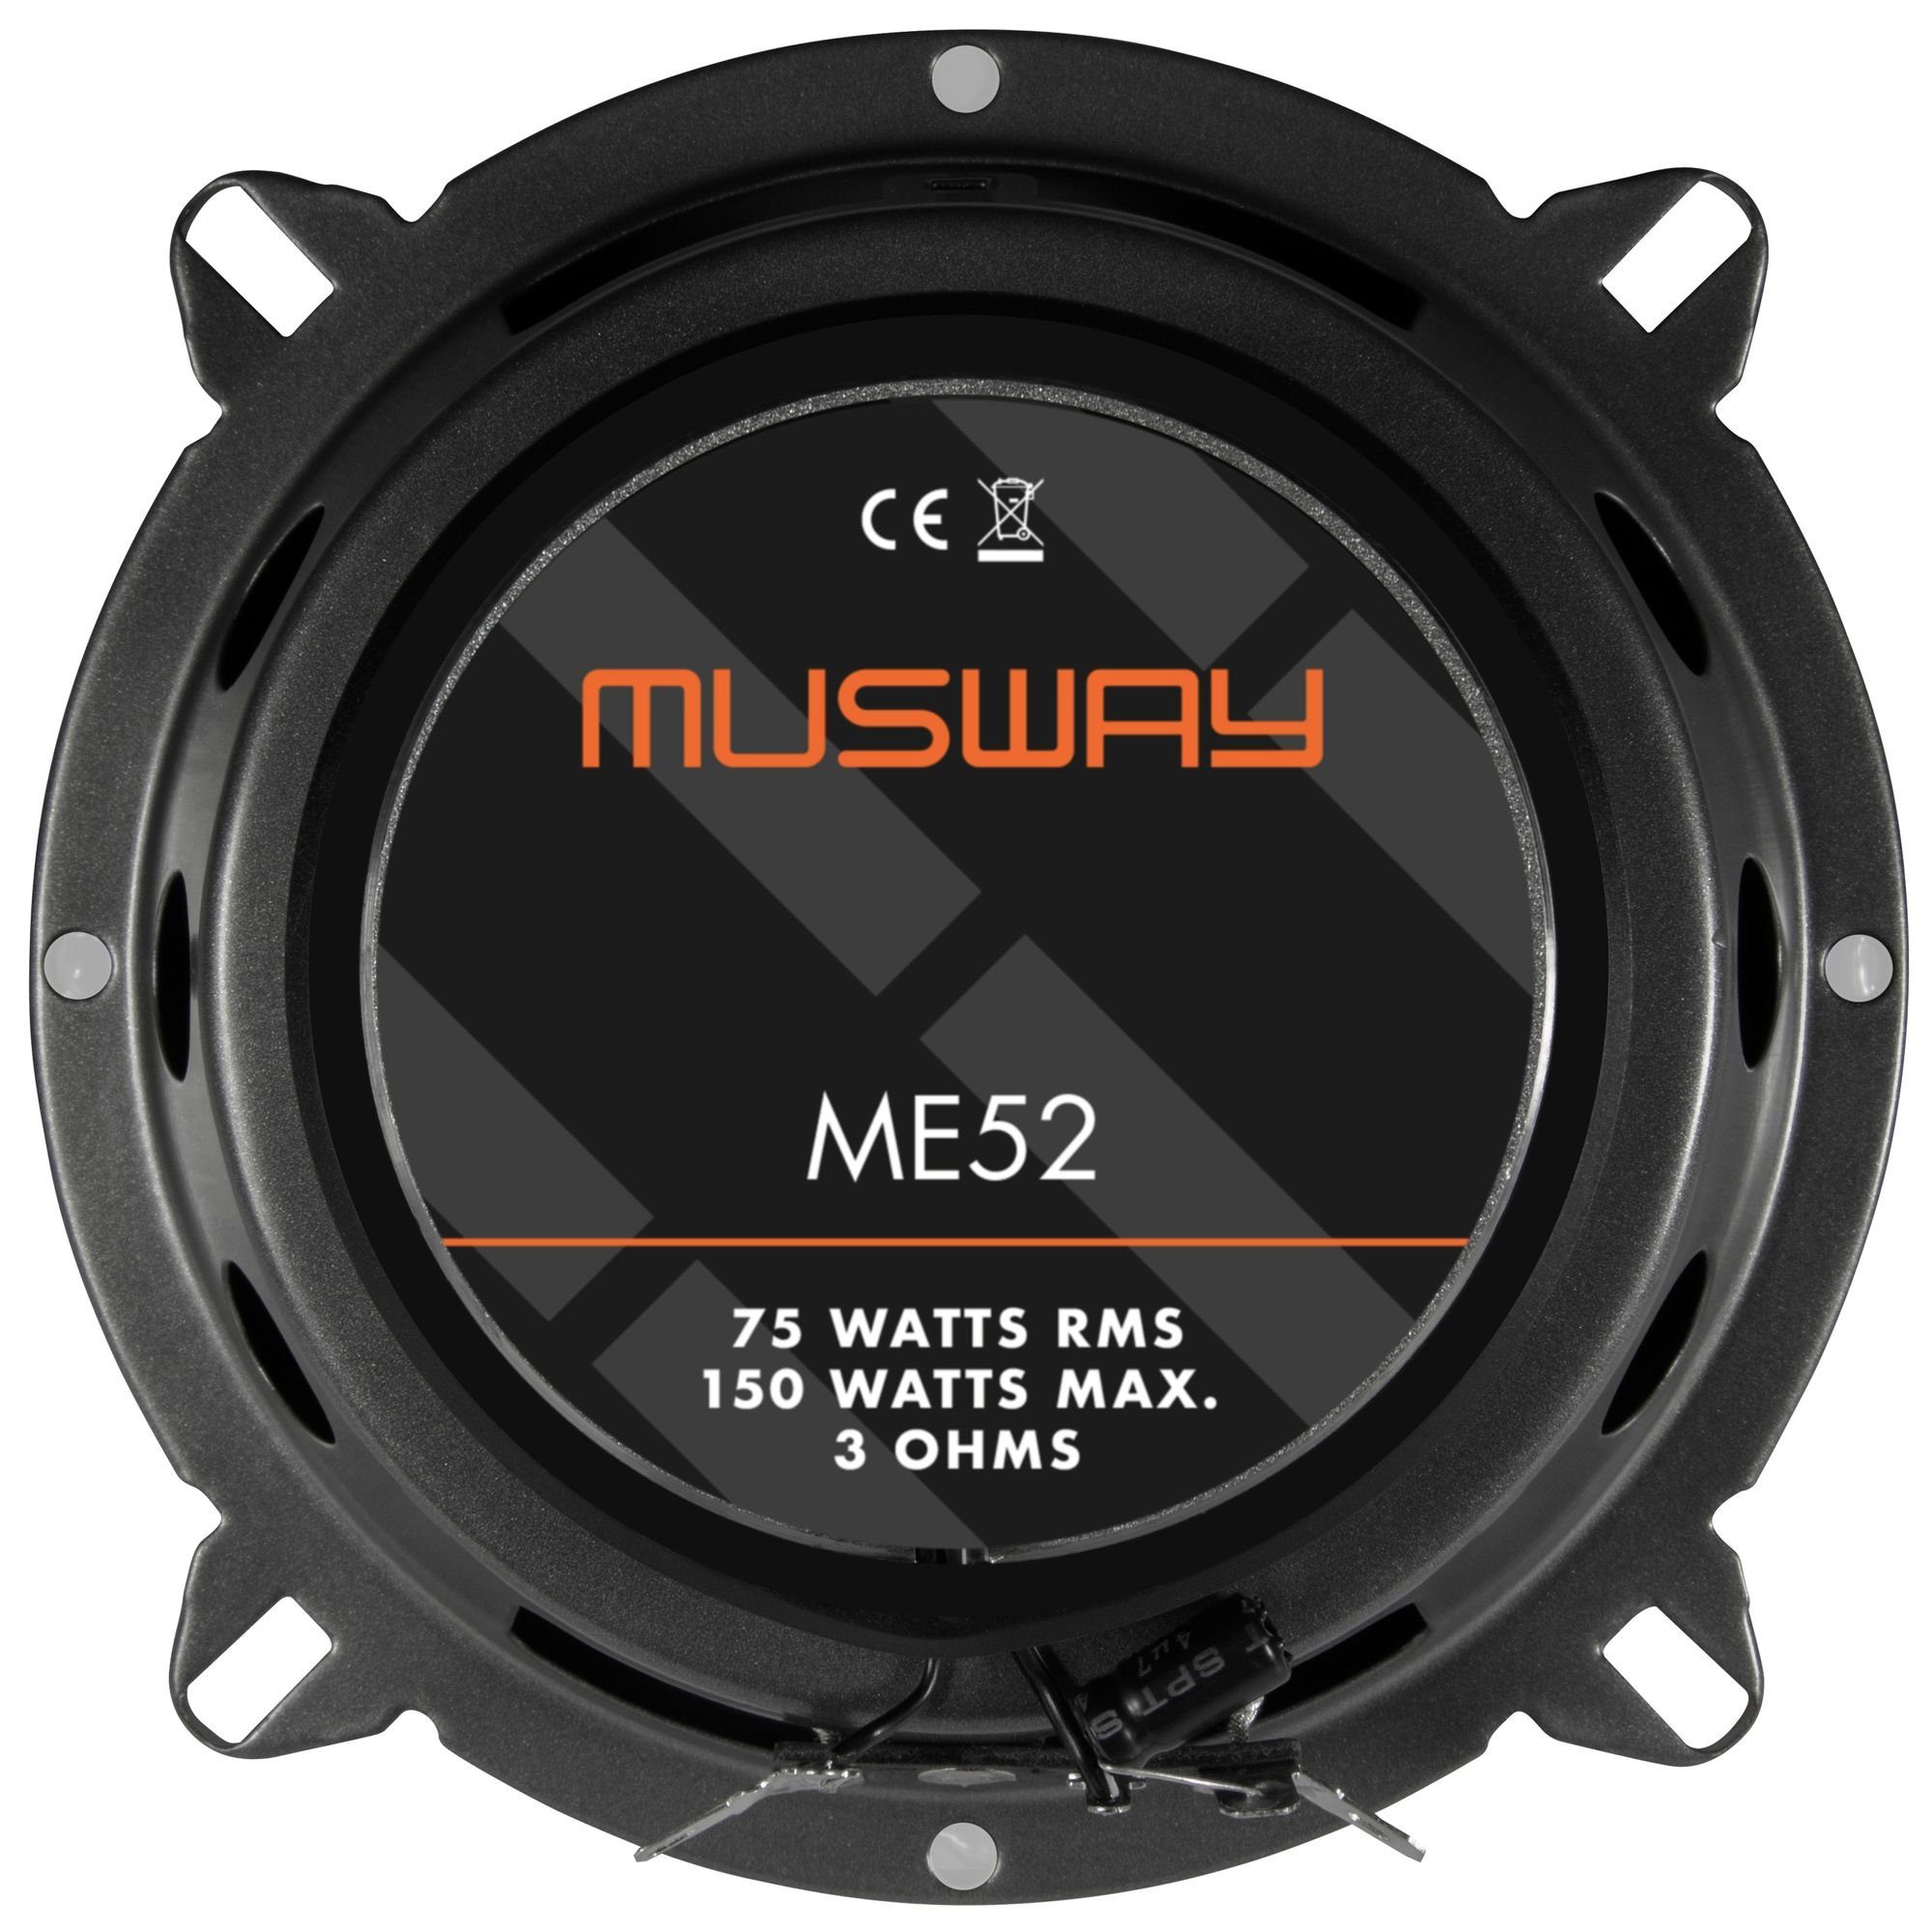 ME52 ME52 Koax (Musway Musway Lautsprecher - Lautsprecher) - 13cm Koax Auto-Lautsprecher 13cm Musway